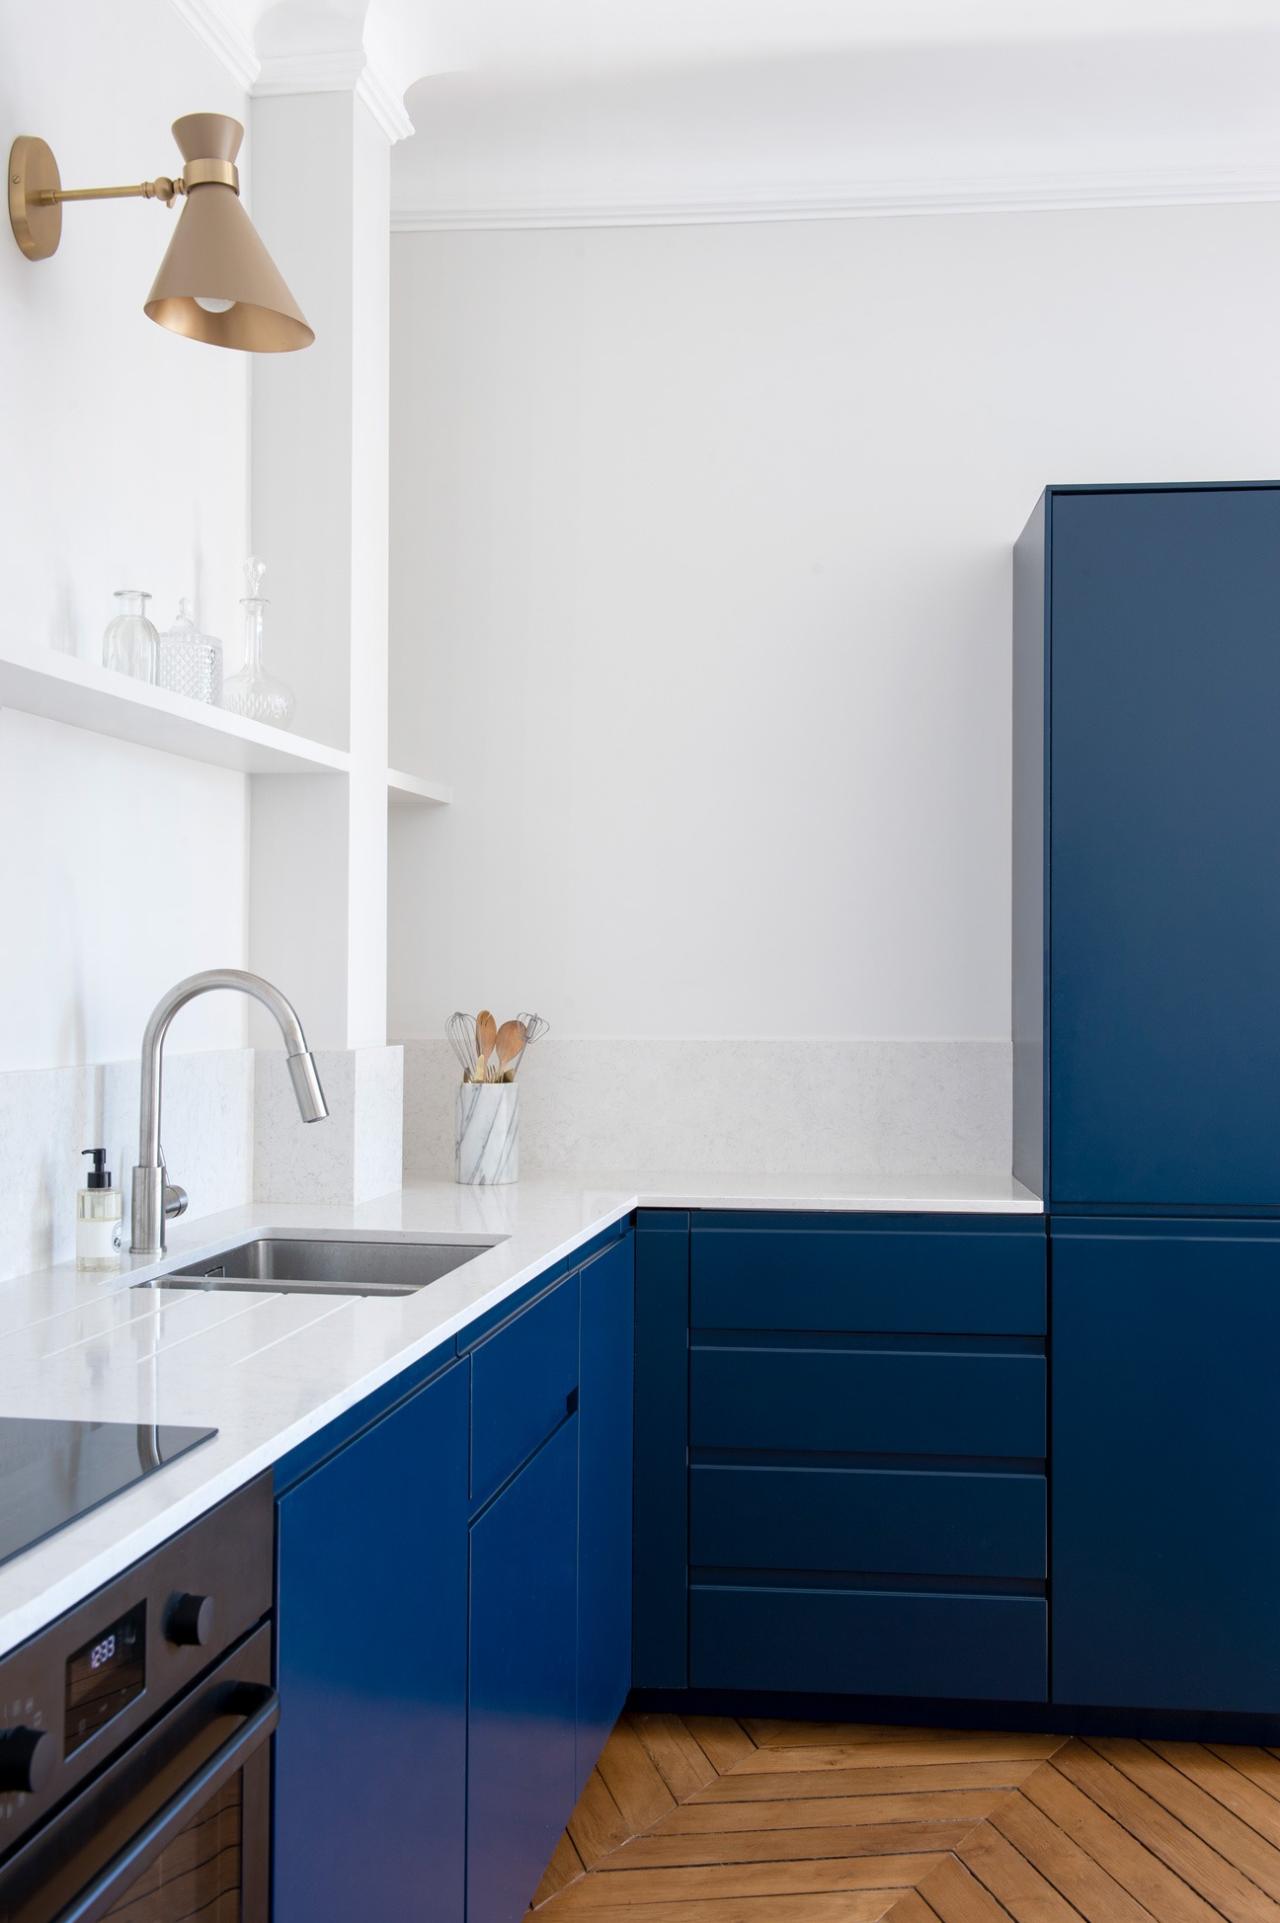 Küche in Blau 02 - Bleu nuit von Camille Gabrielle - Fotos von Flora Fourcade